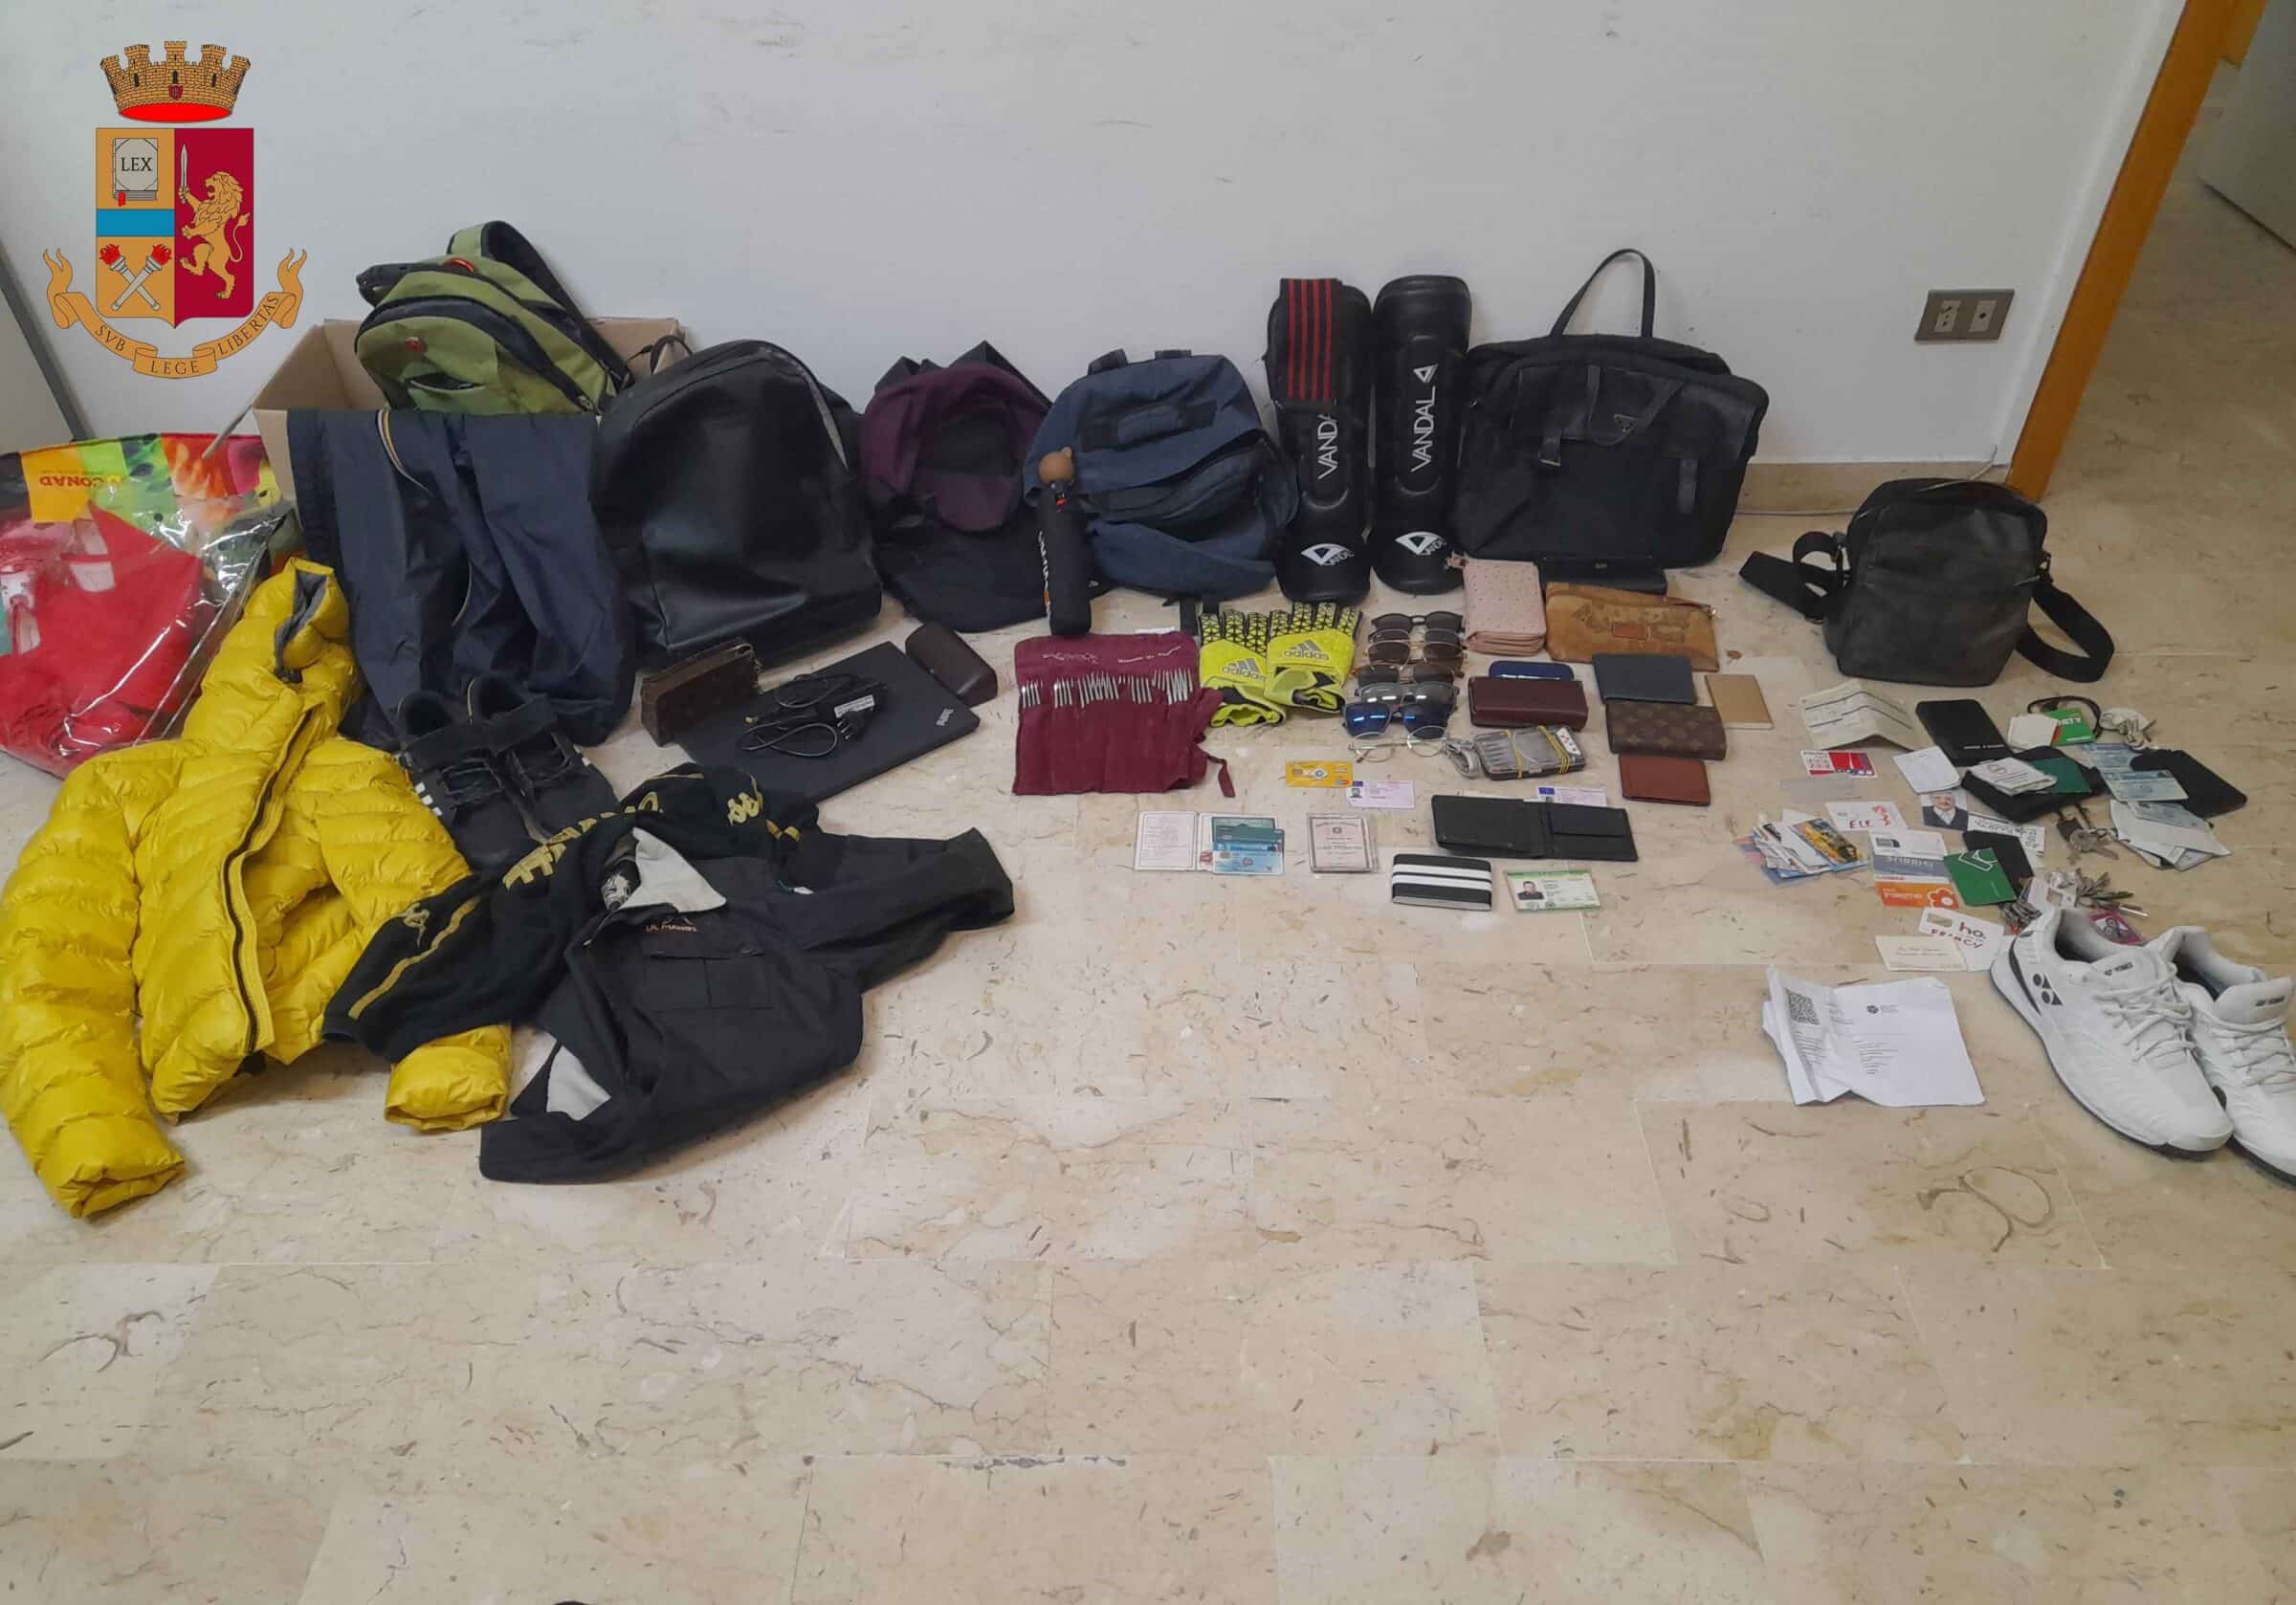 Più di cento episodi di furto in auto in sosta, arrestato 35enne: le FOTO del materiale rubato